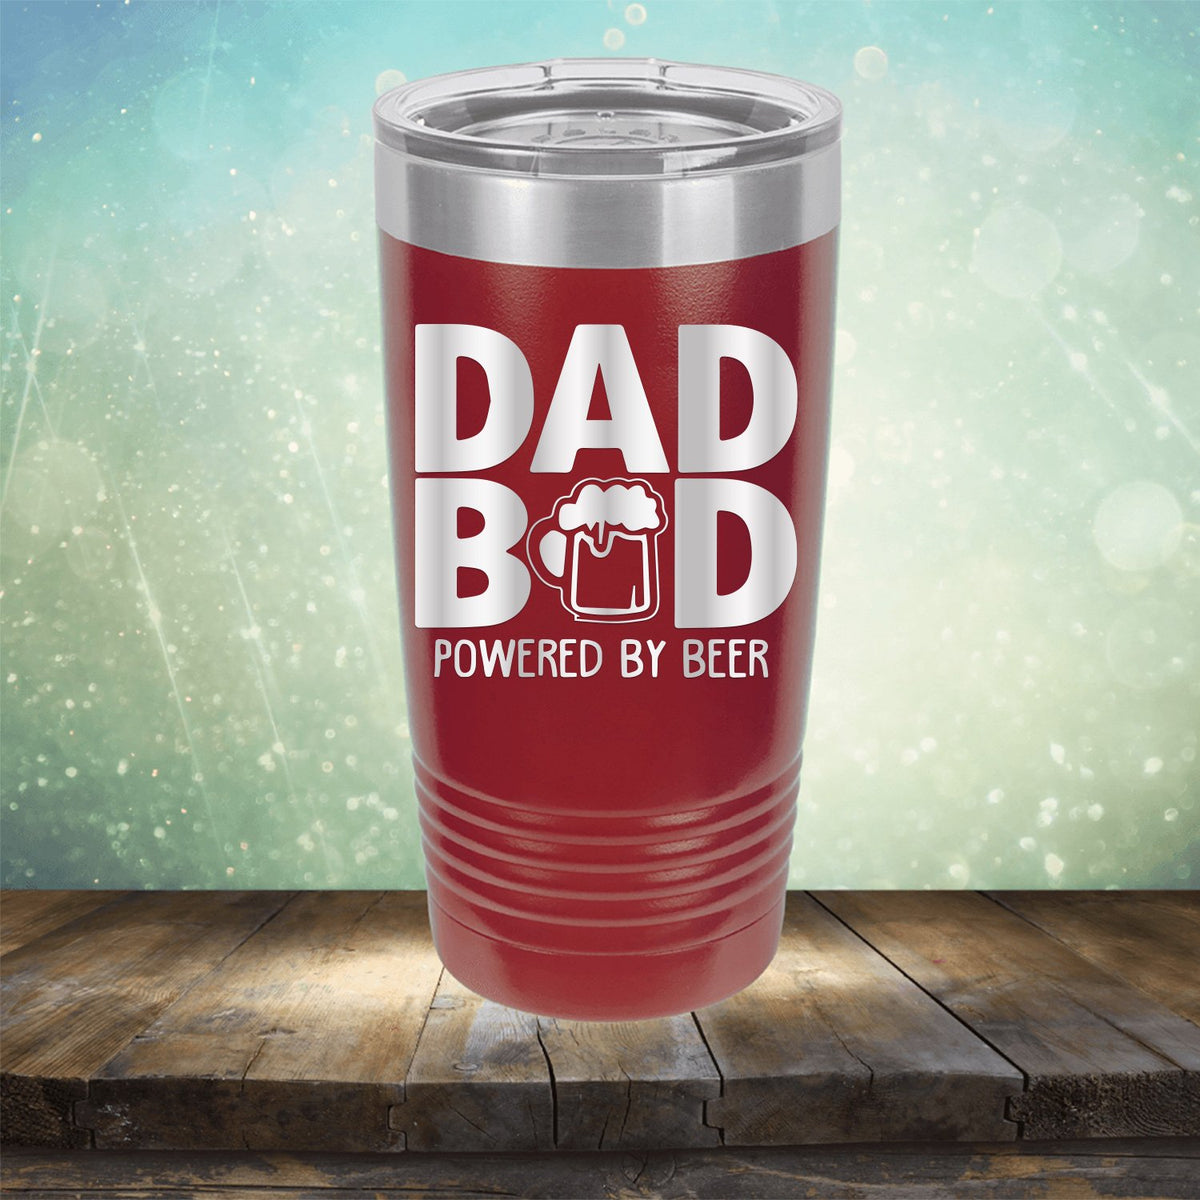 Dad Bod Powered by Beer - Laser Etched Tumbler Mug